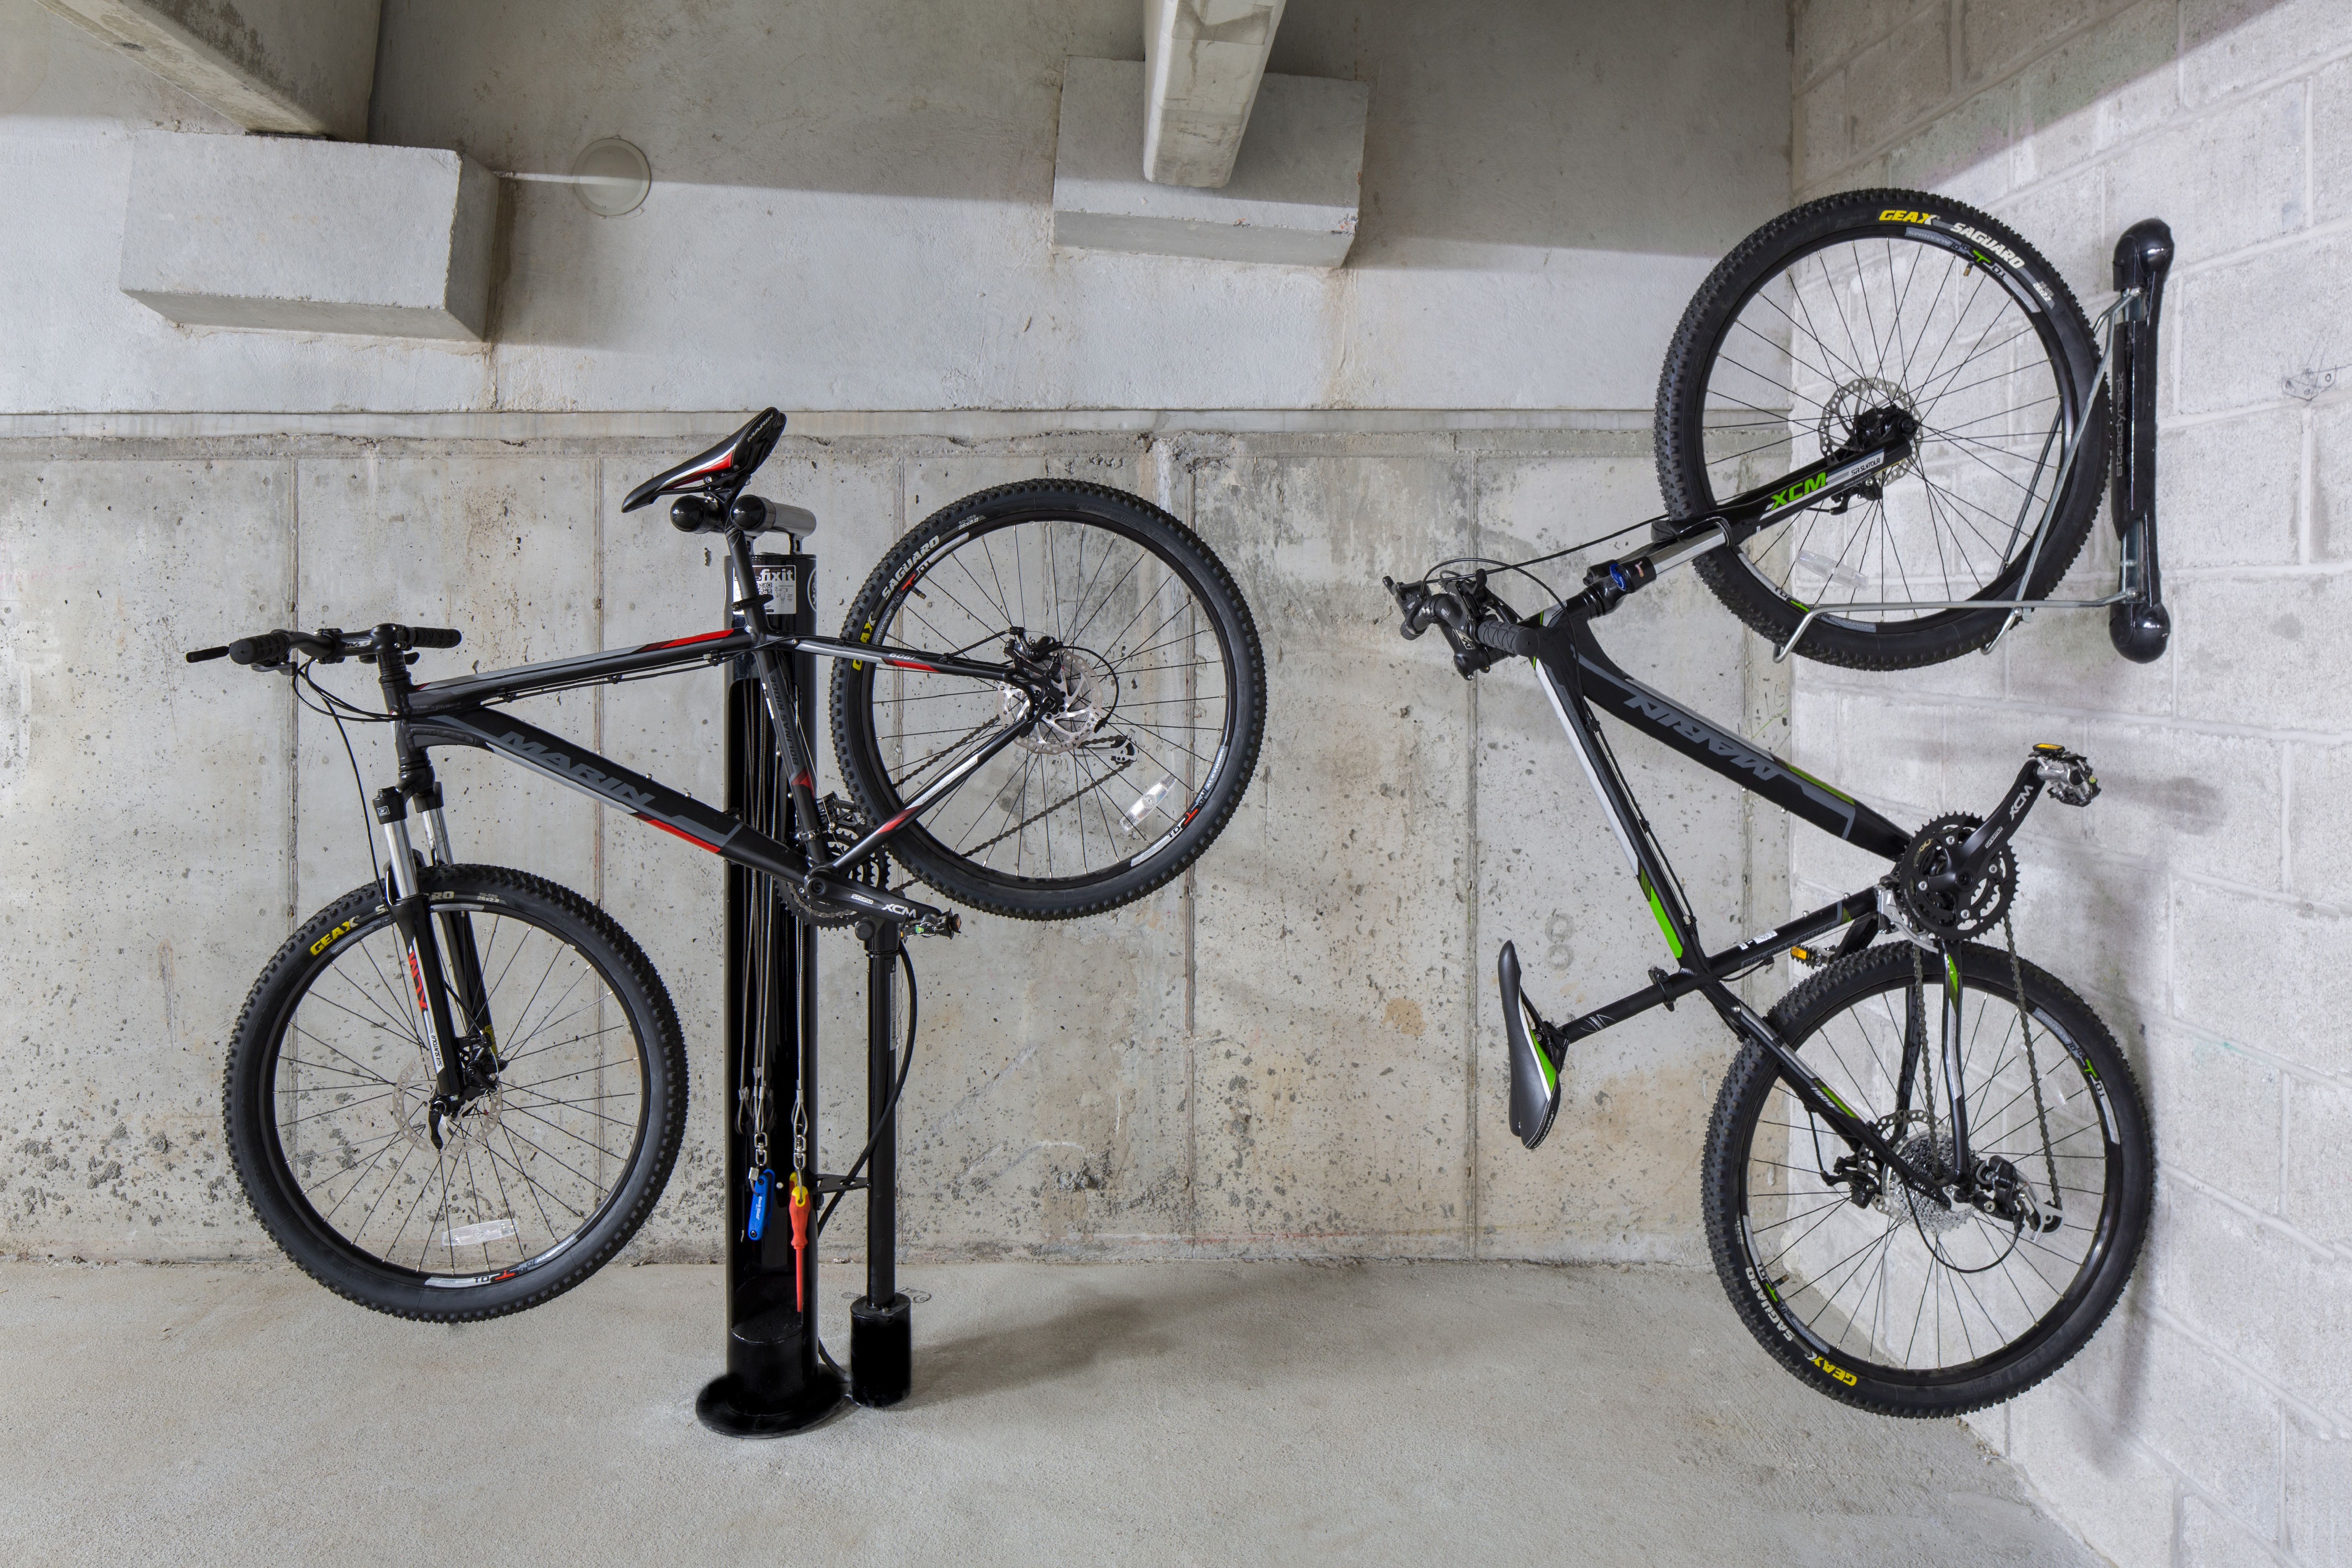 Convenient bike storage